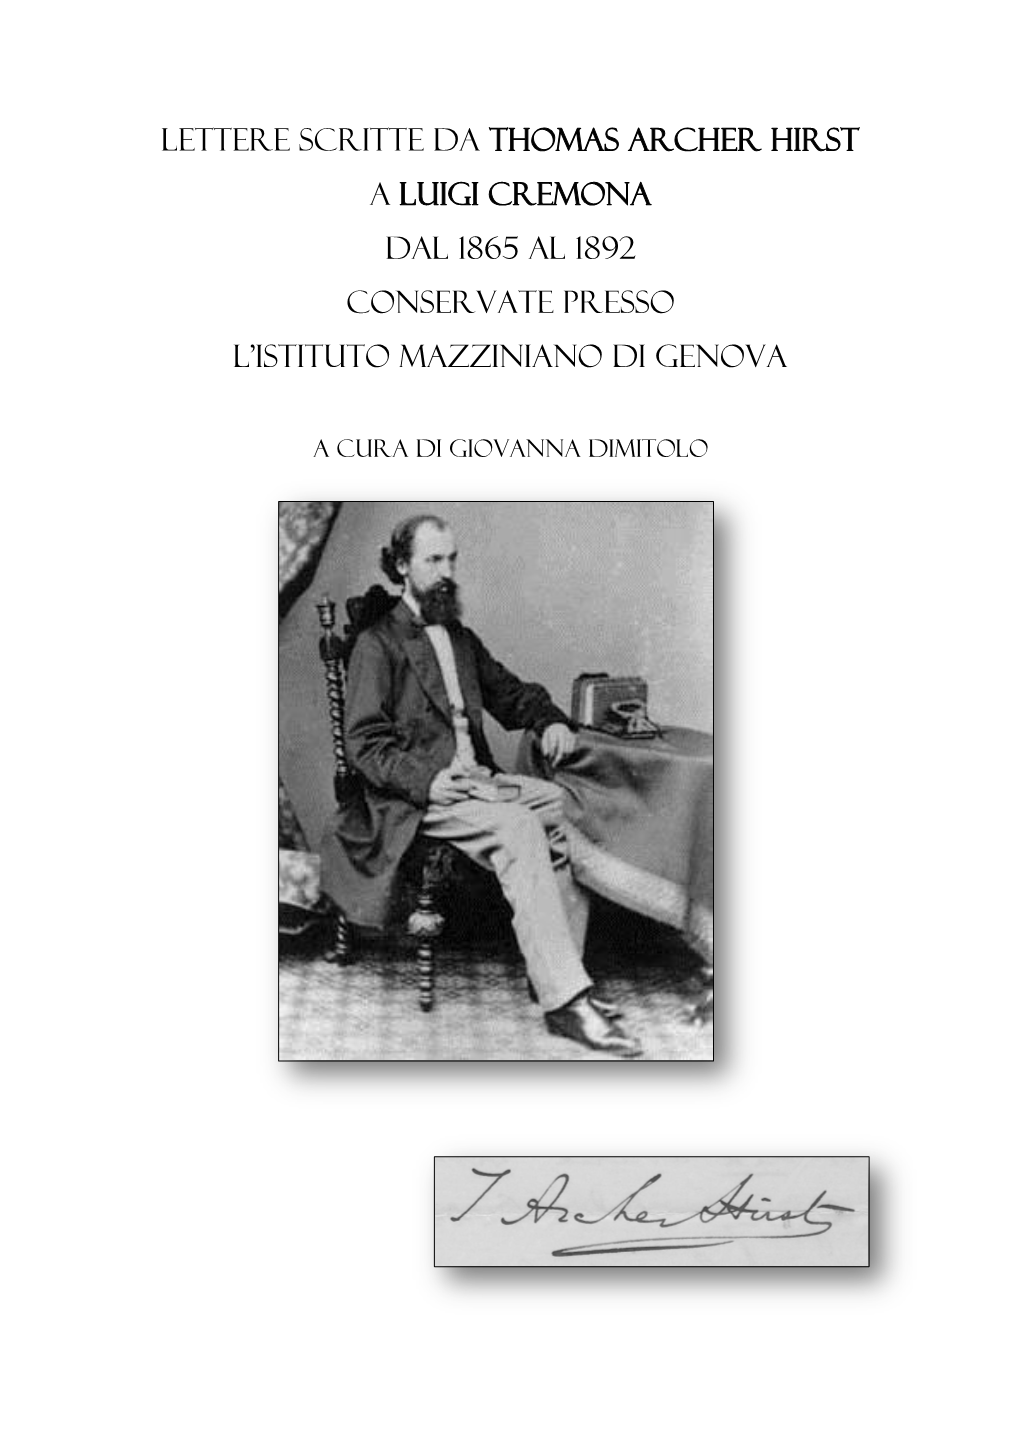 Lettere Scritte Da Thomas Archer Hirst a Luigi Cremona Dal 1865 Al 1892 Conservate Presso L’Istituto Mazziniano Di Genova